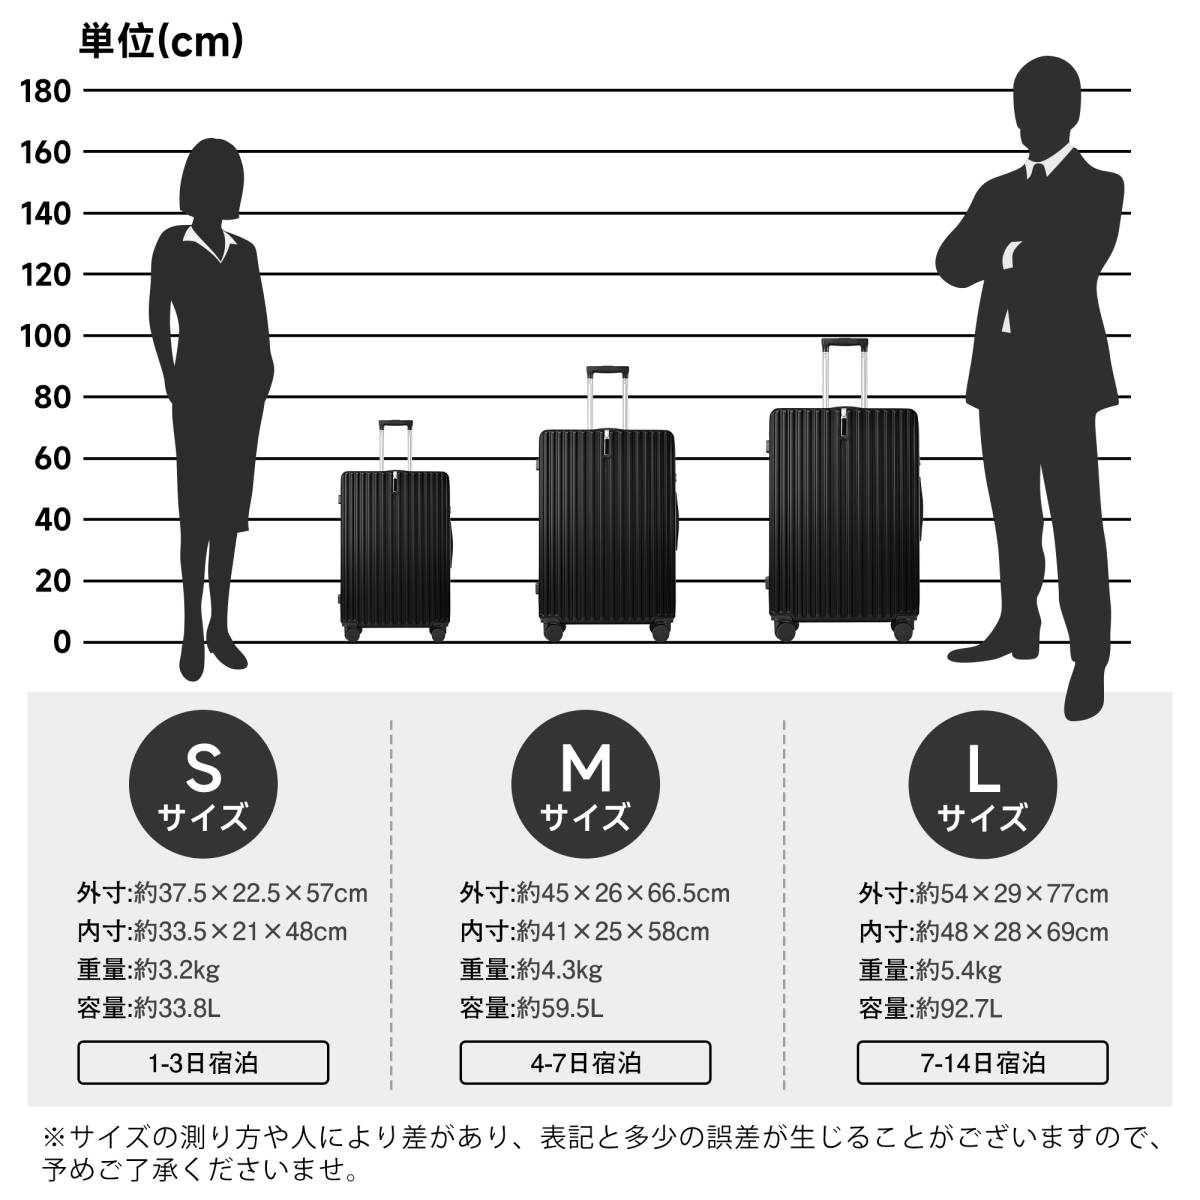 スーツケース Lサイズ 軽量 TSAロック搭載 360度回転 ファスナー式 国際的 おしゃれ 人気色 (L, ブラック)_画像2